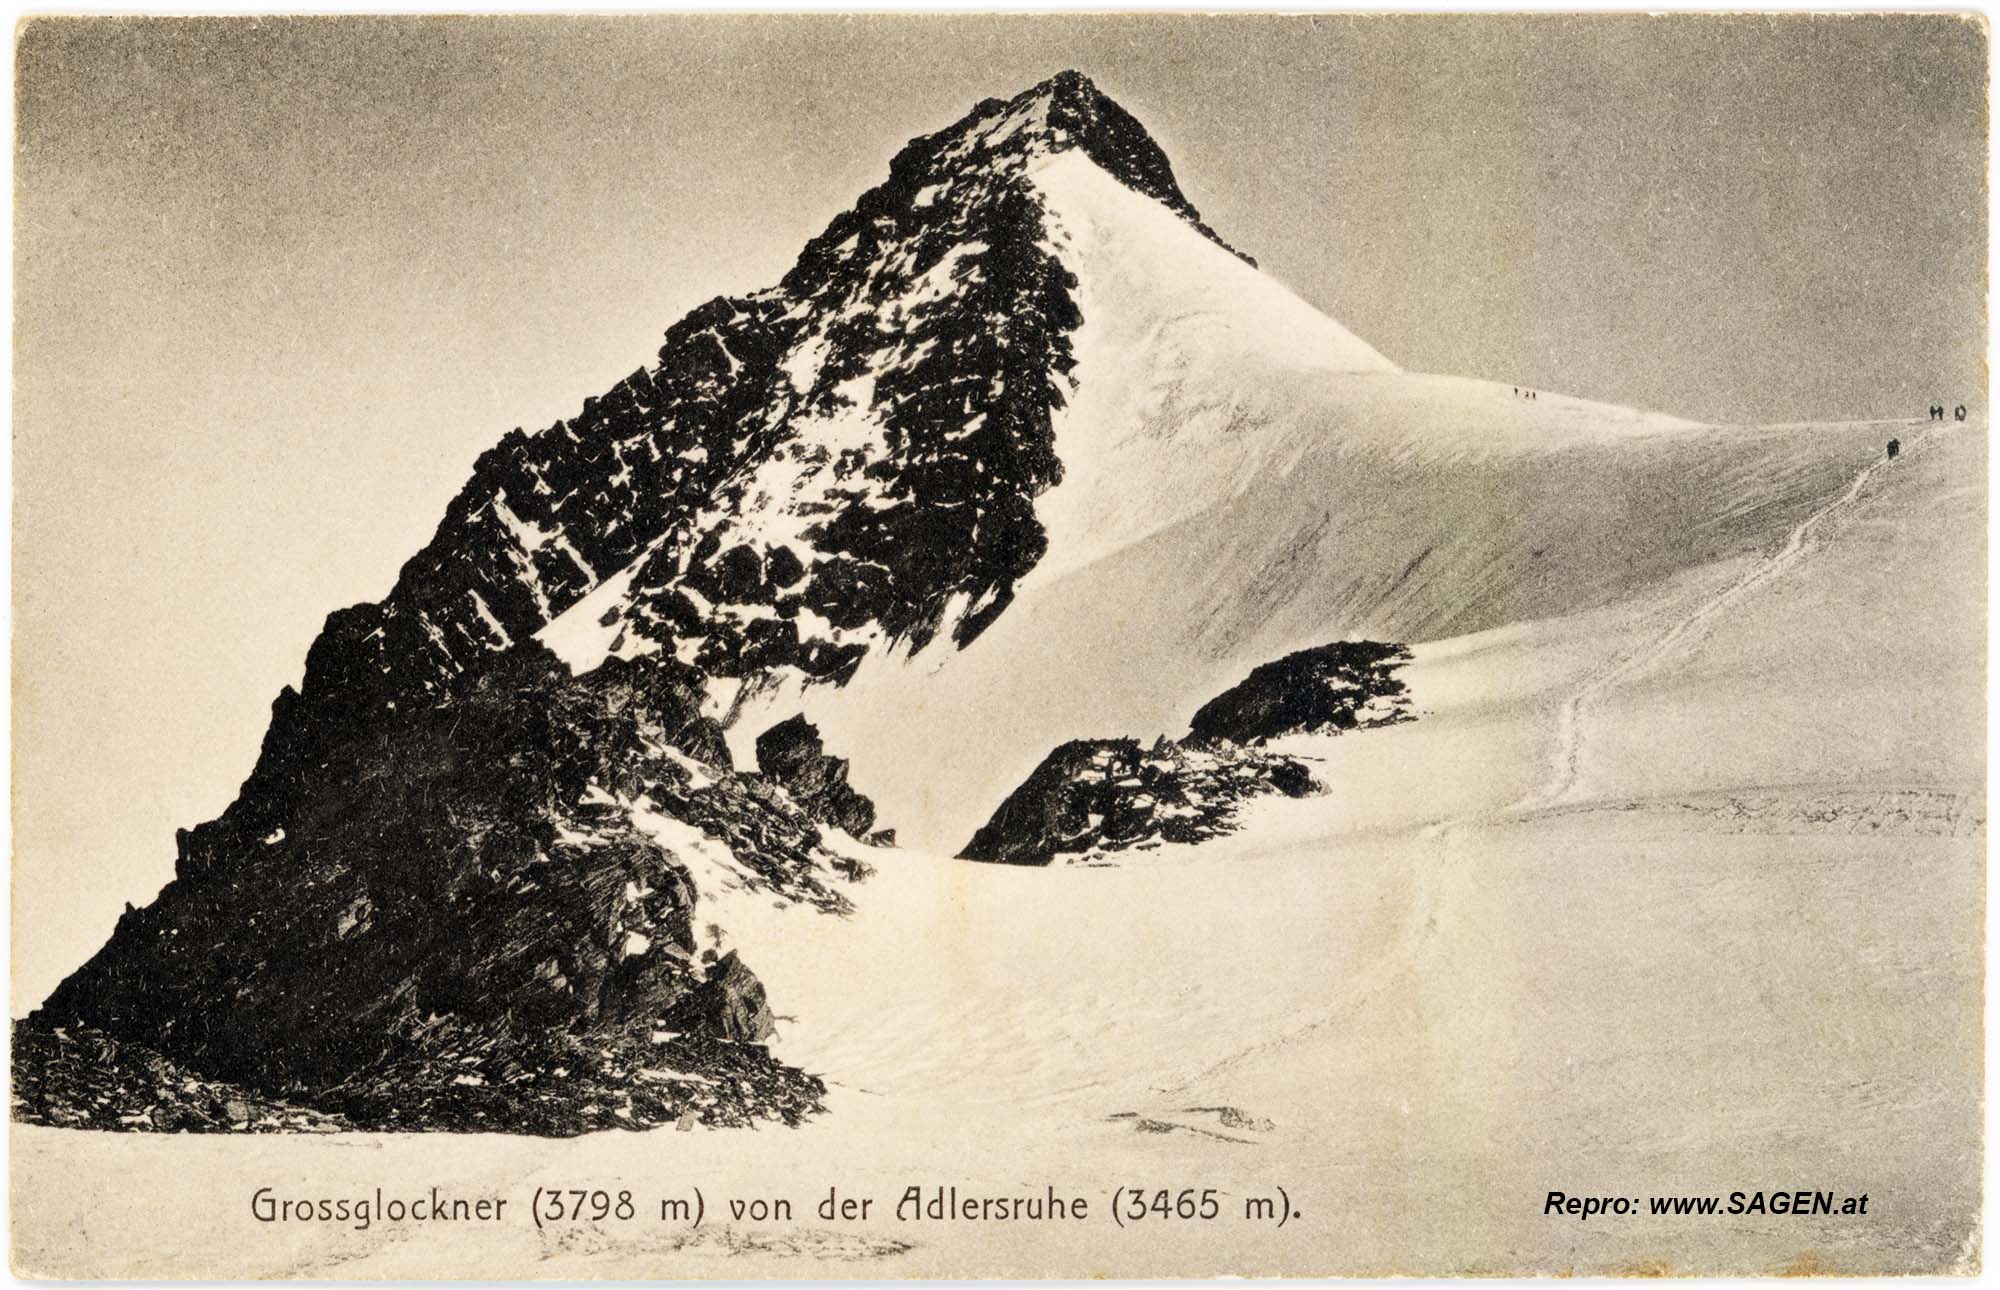 Grossglockner (3798m) von der Adlersruhe (3465m)